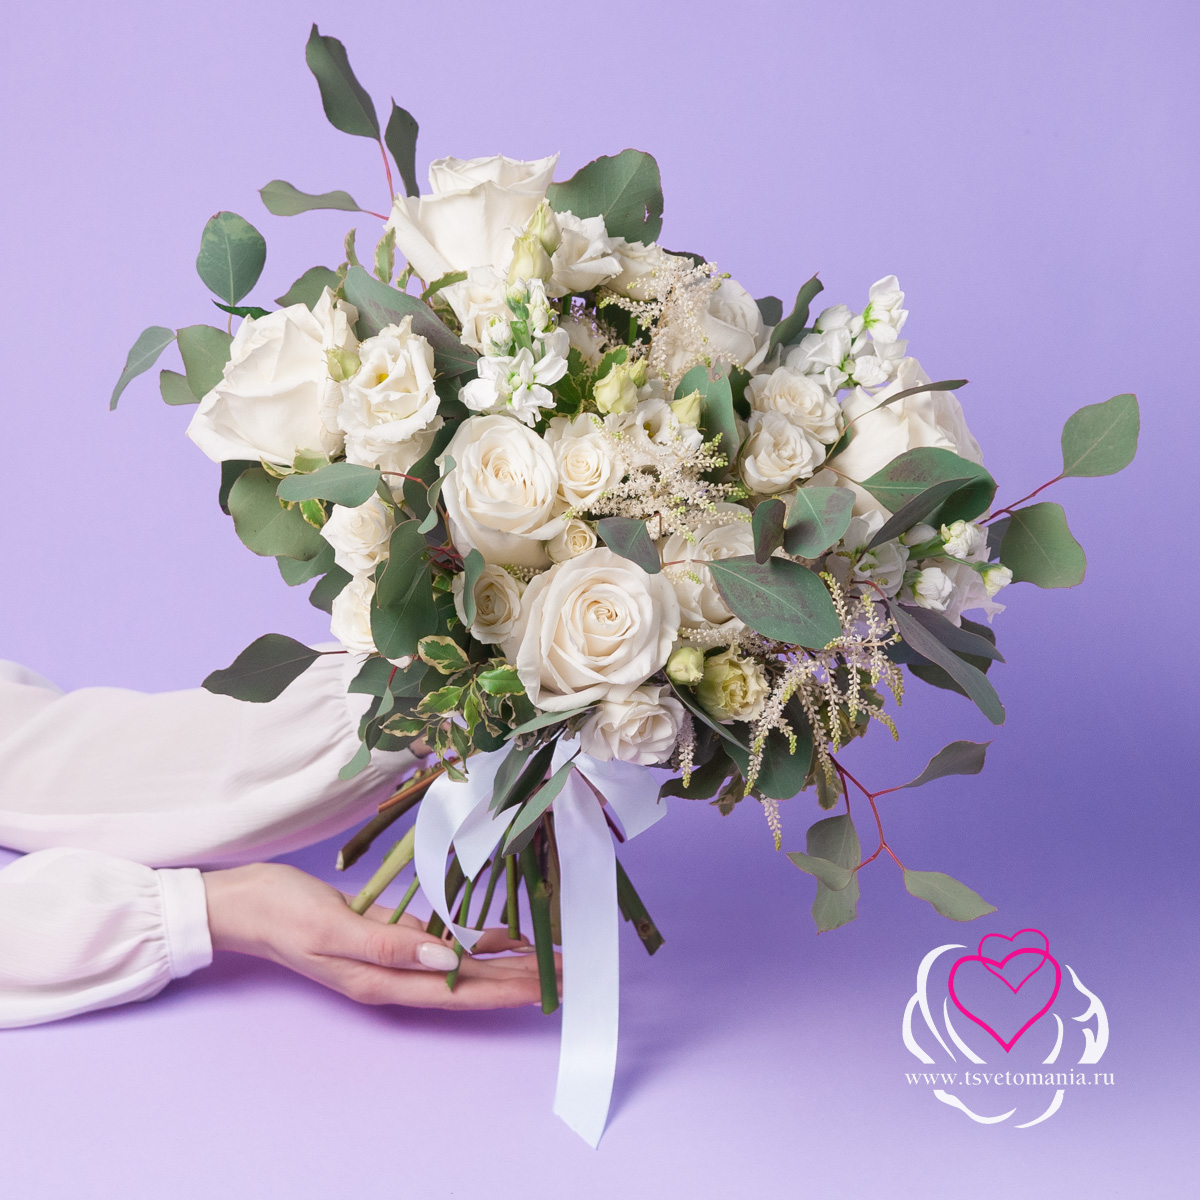 Белый свадебный букет из роз и астильбы